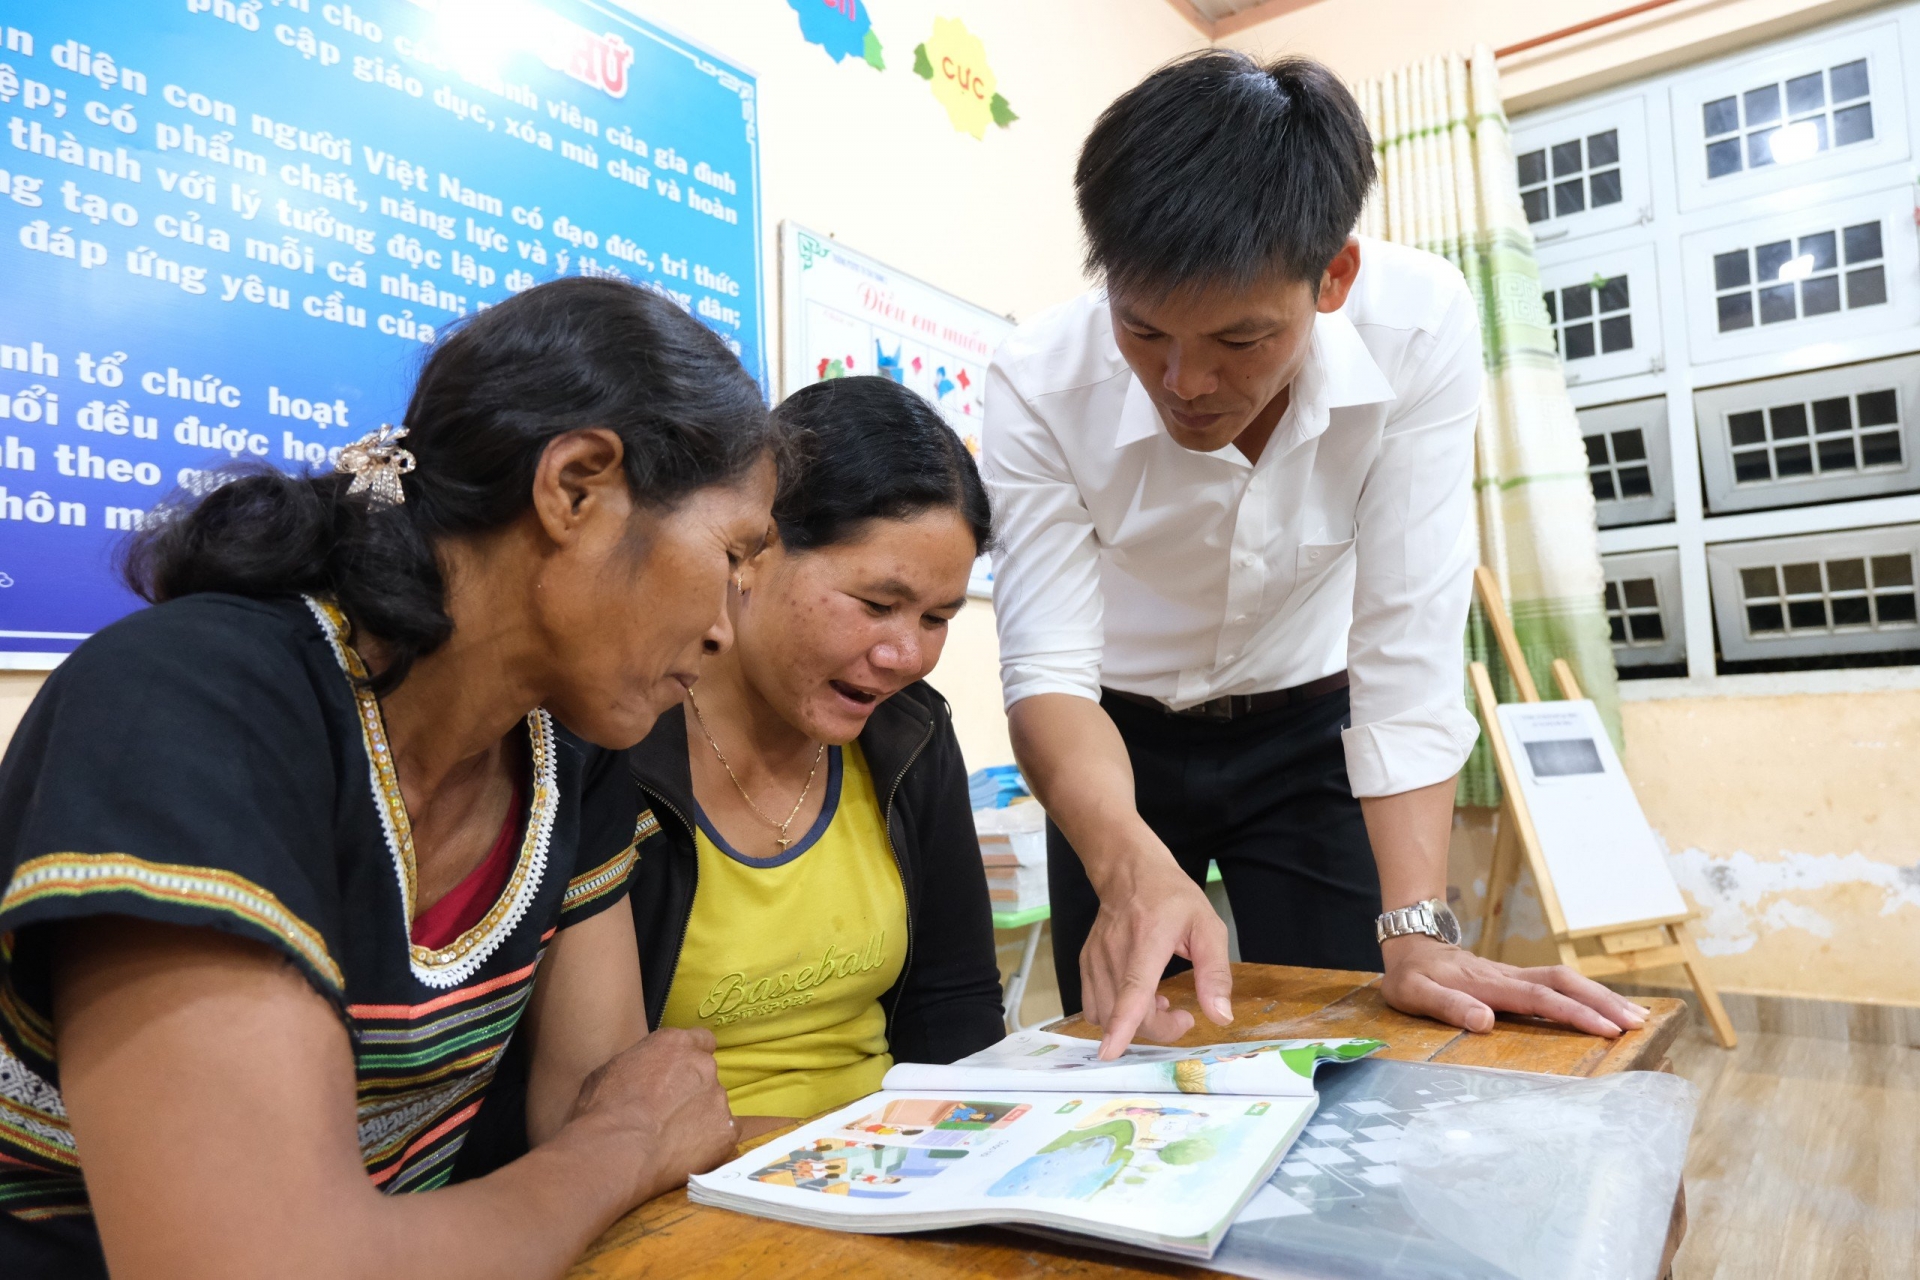 Lớp học xóa mù chữ ở điểm trường Konpang được mở ra với mong muốn giúp bà con biết đọc, viết và tính toán